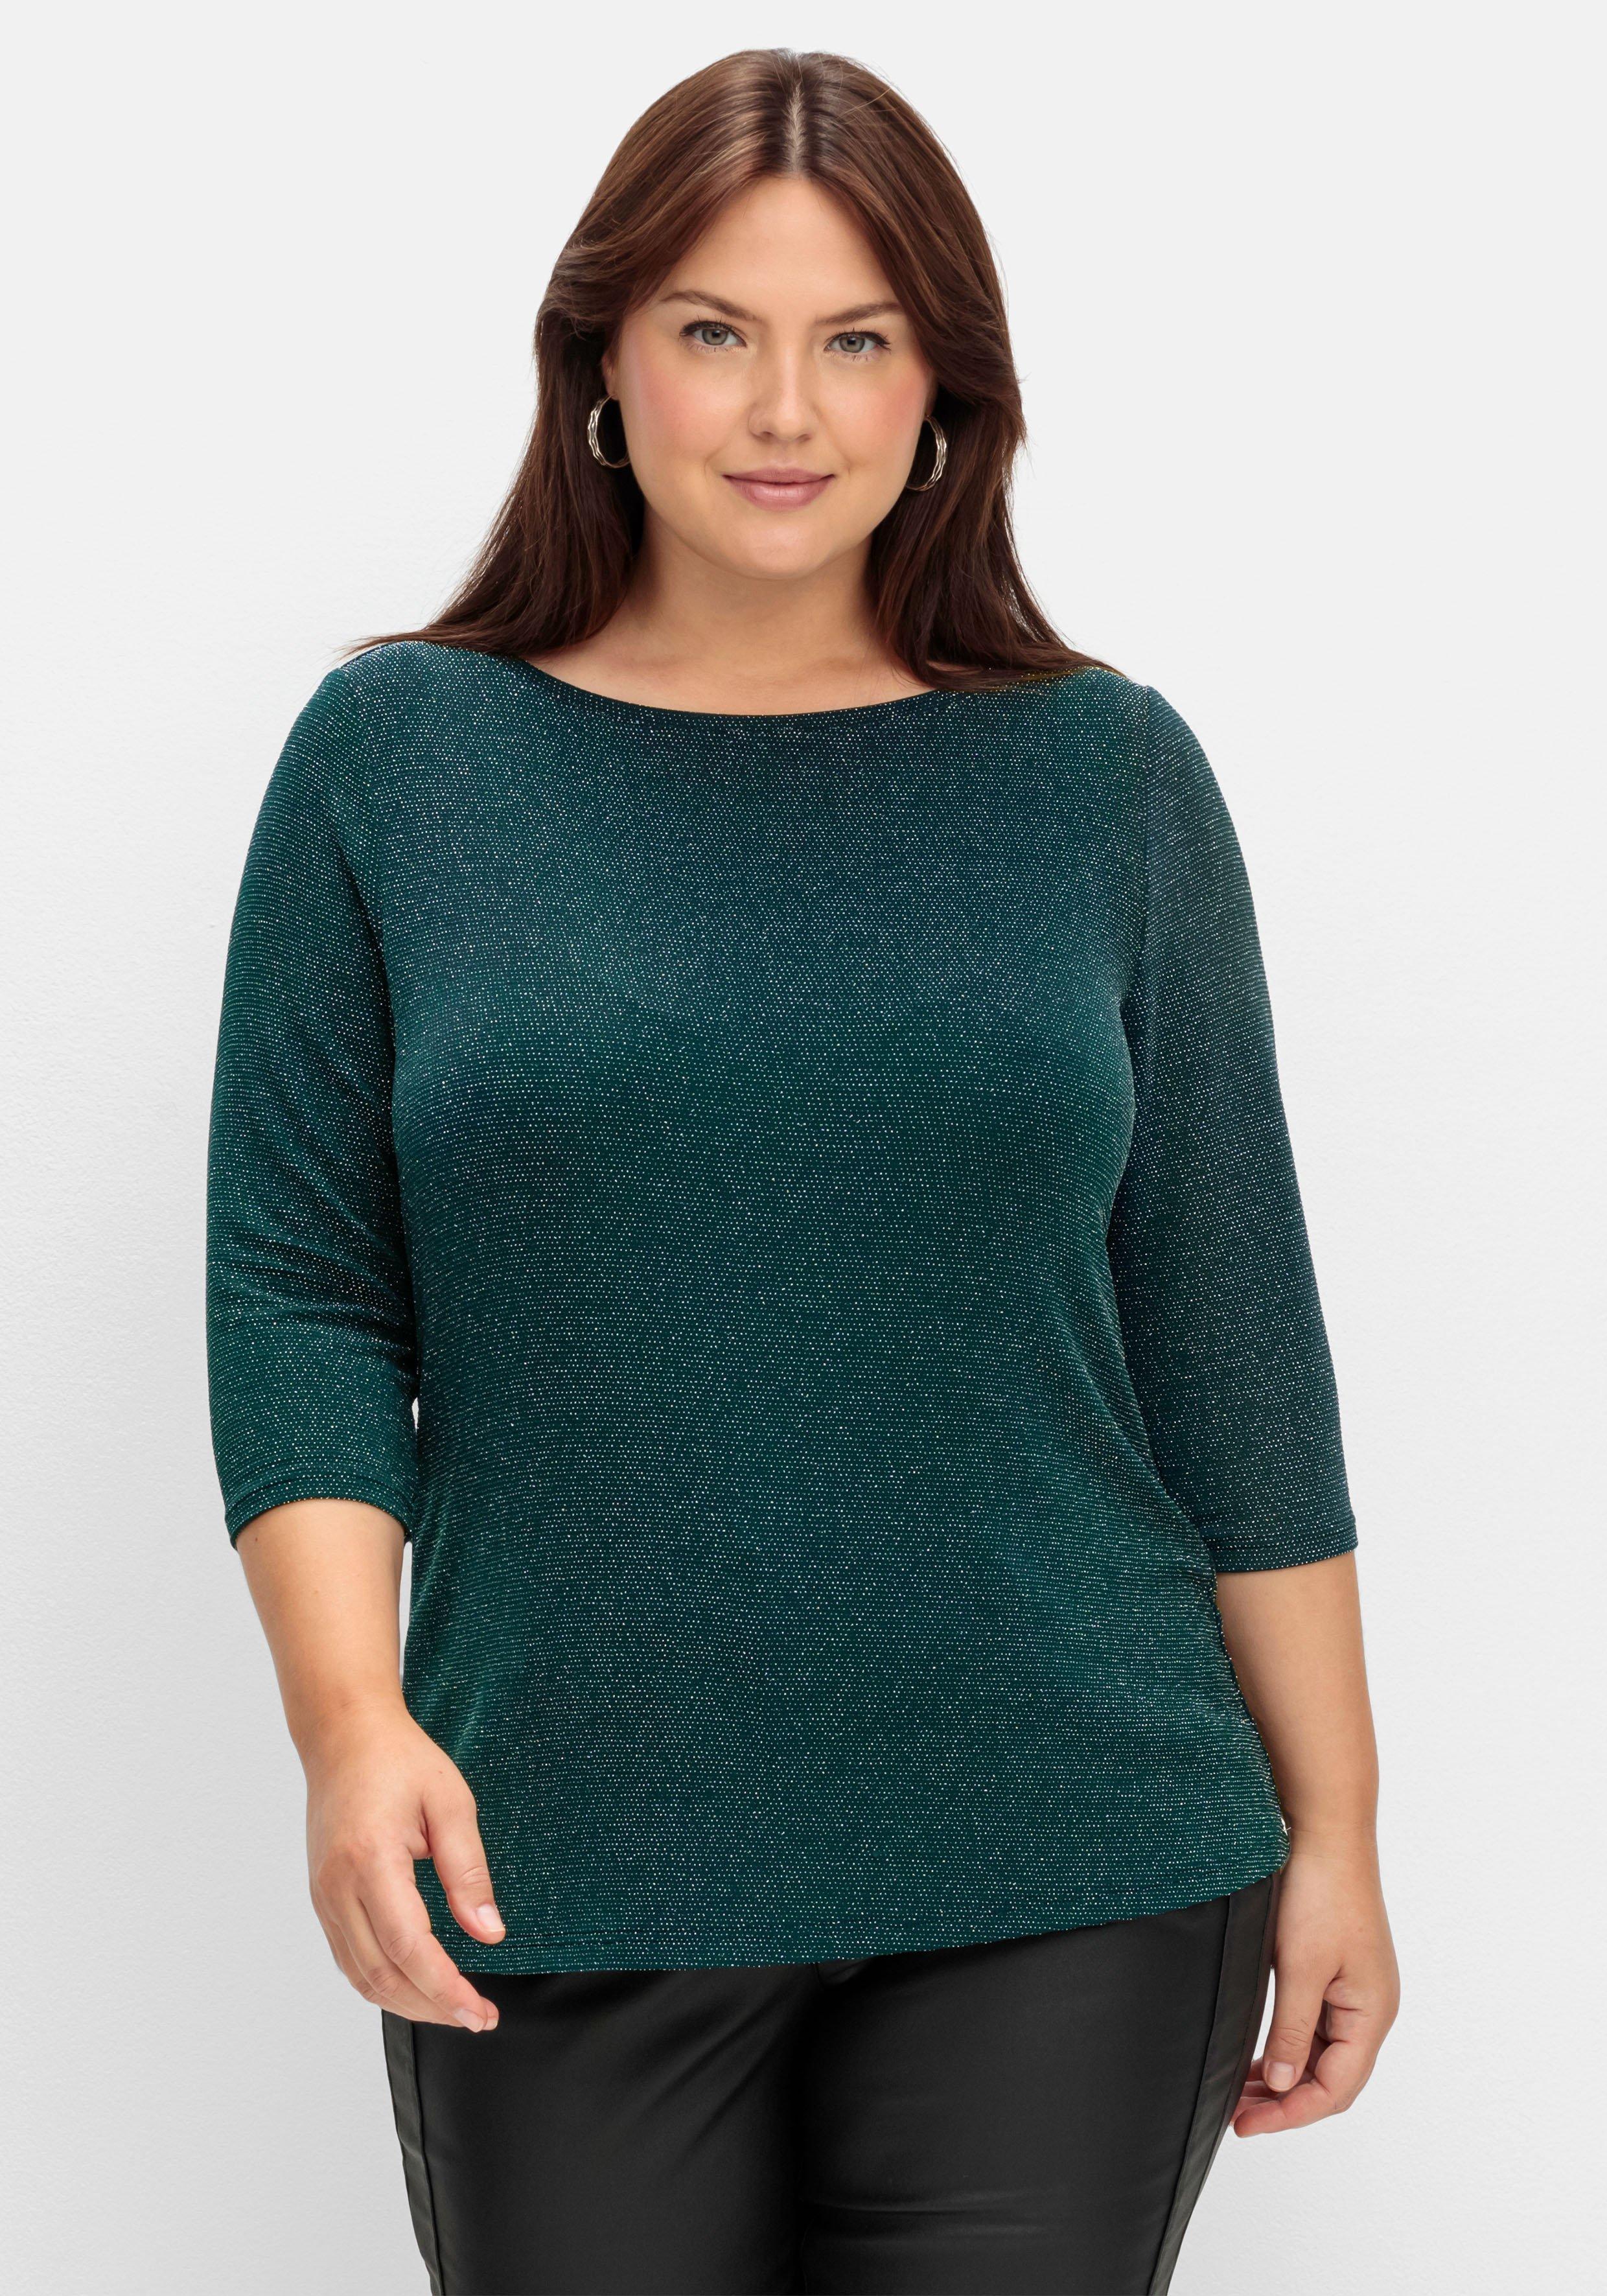 grün 46 Größe Shirts ♥ sheego Mode › | große Plus Size Größen